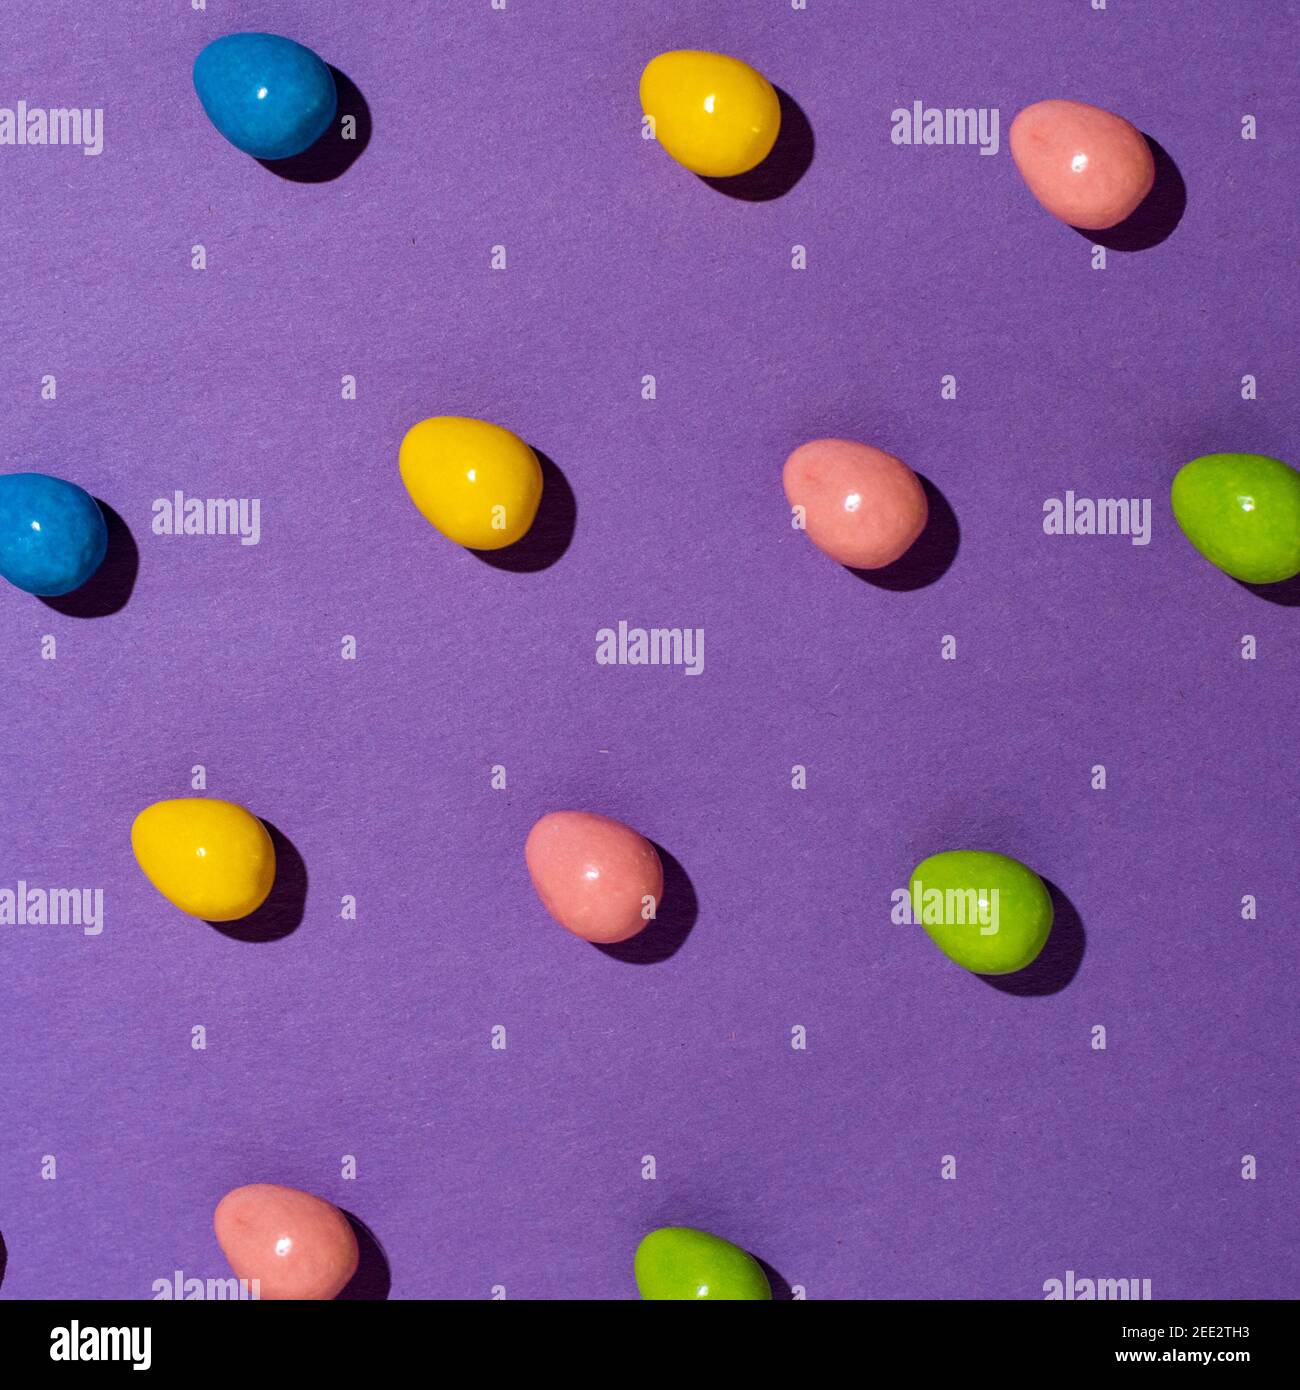 Les bonbons sont disposés sur du papier coloré créant des motifs répétitifs. Série. Banque D'Images